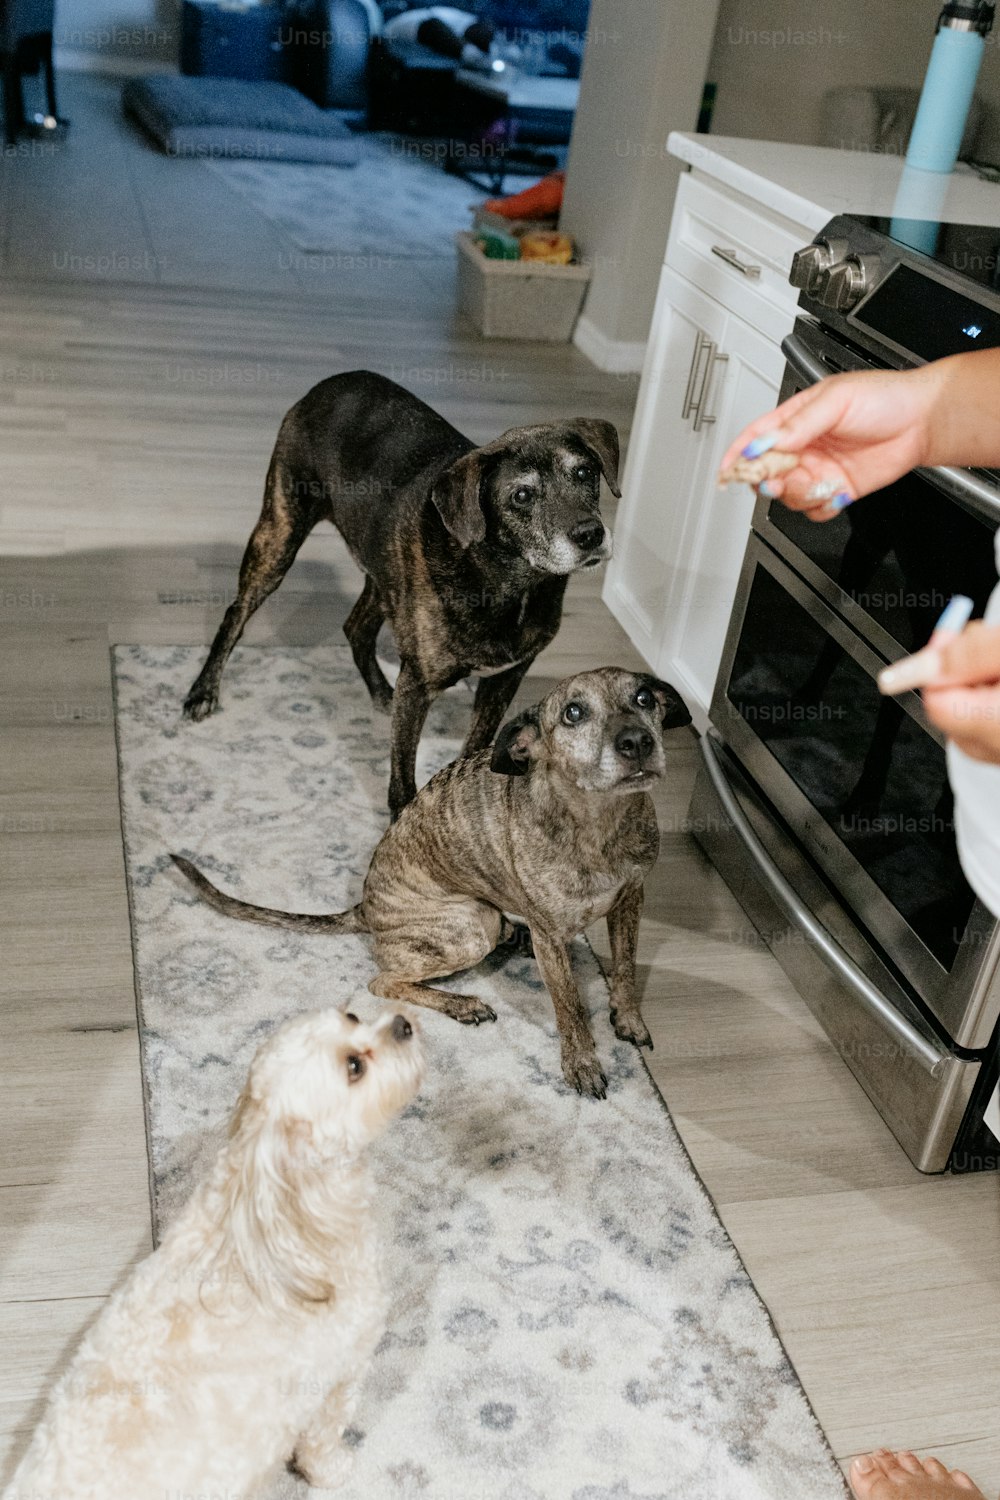 un groupe de chiens debout sur le sol d’une cuisine